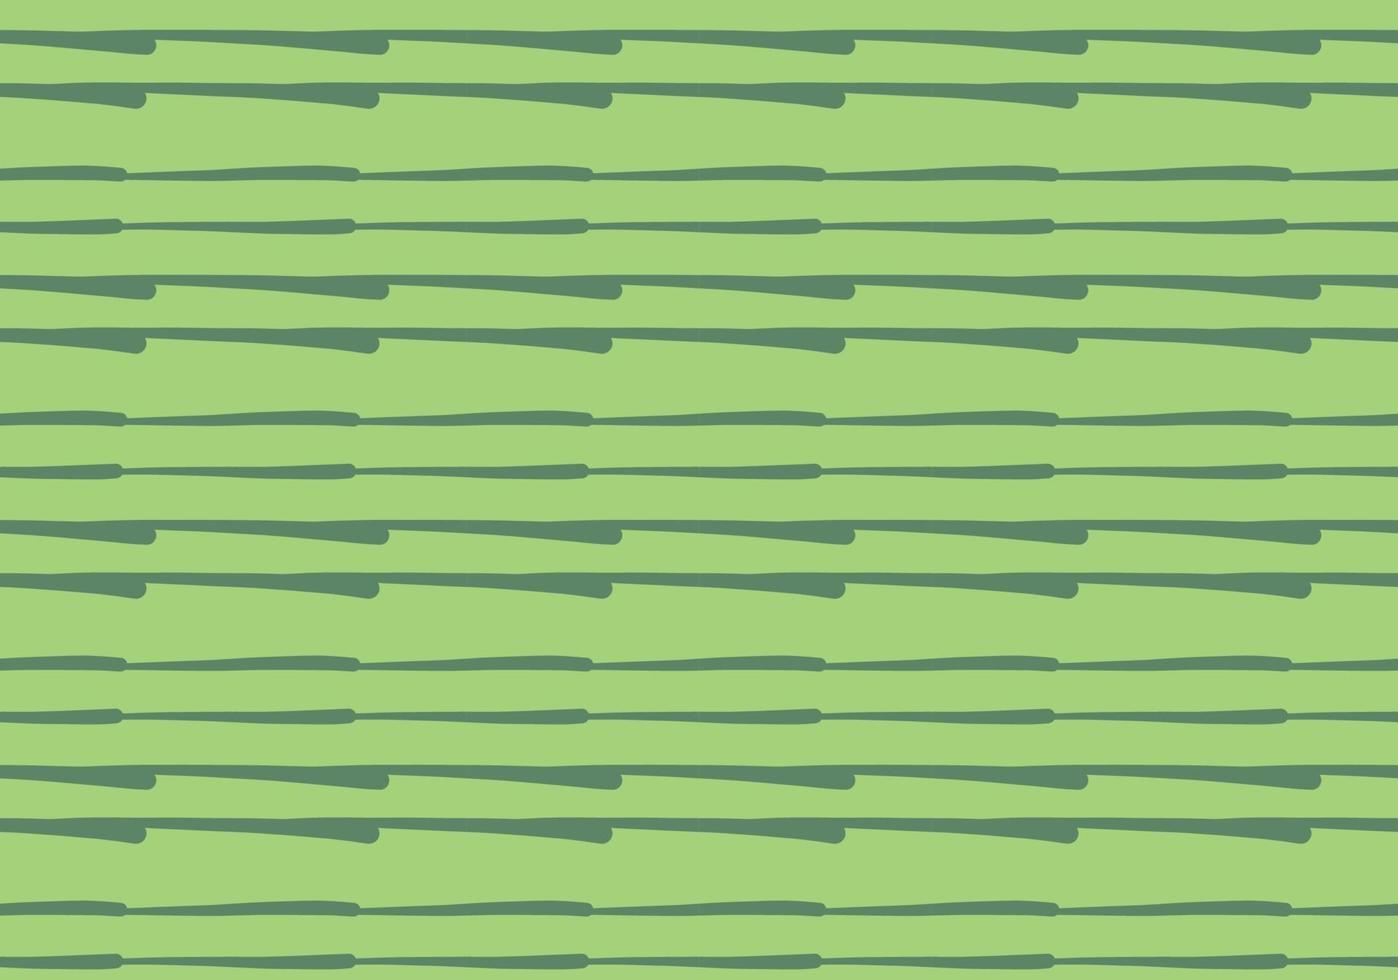 Vektor Textur Hintergrund, nahtloses Muster. handgezeichnete, grüne Farben.